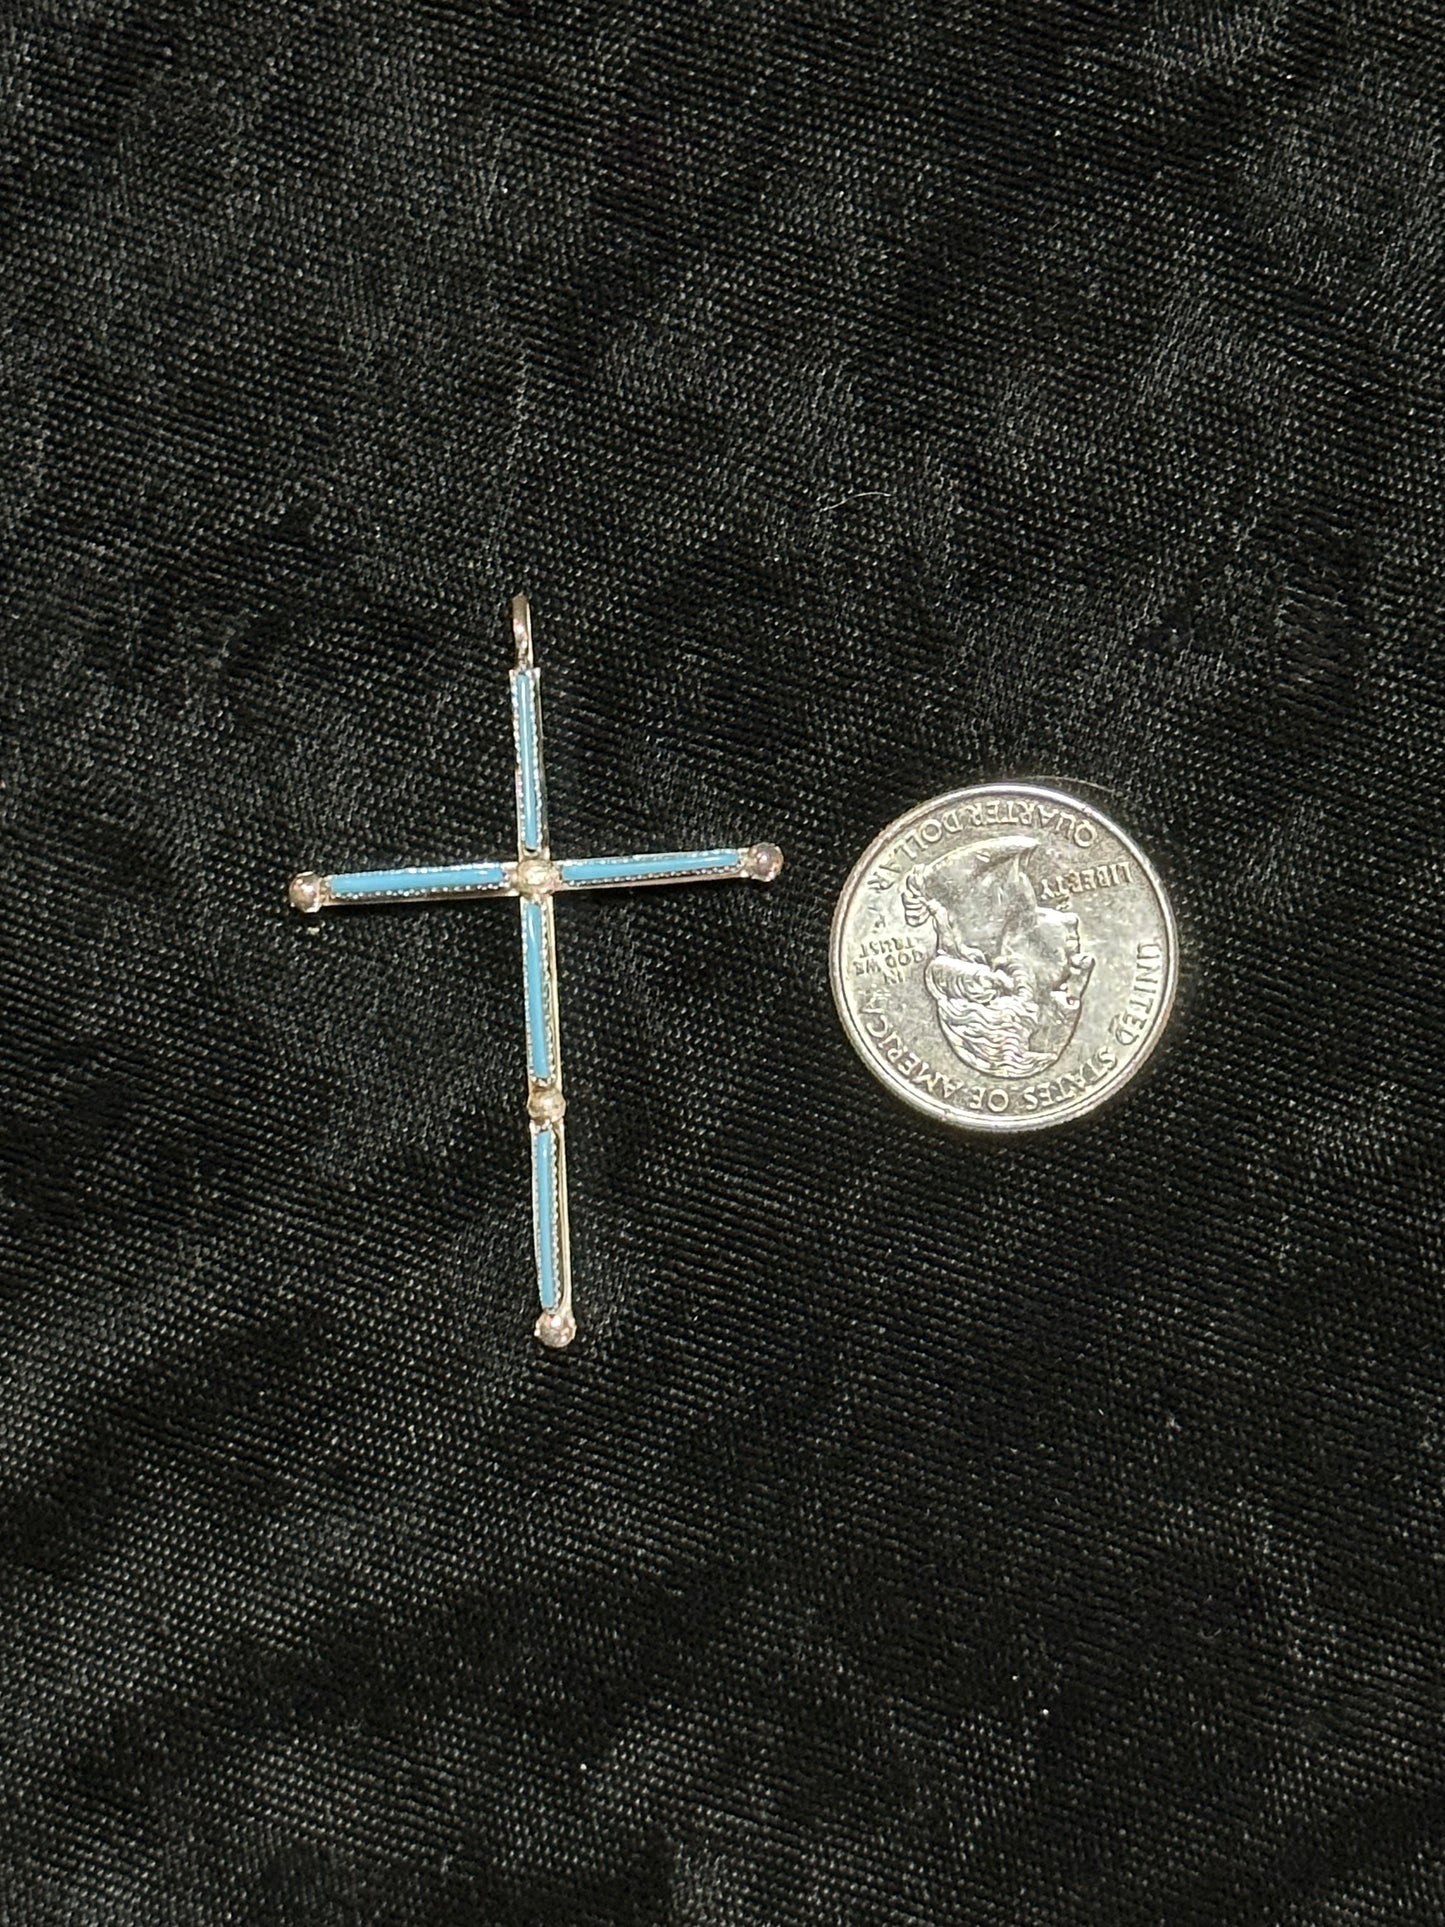 Turquoise Needlepoint Cross Pendant by Ashley Laate, Zuni